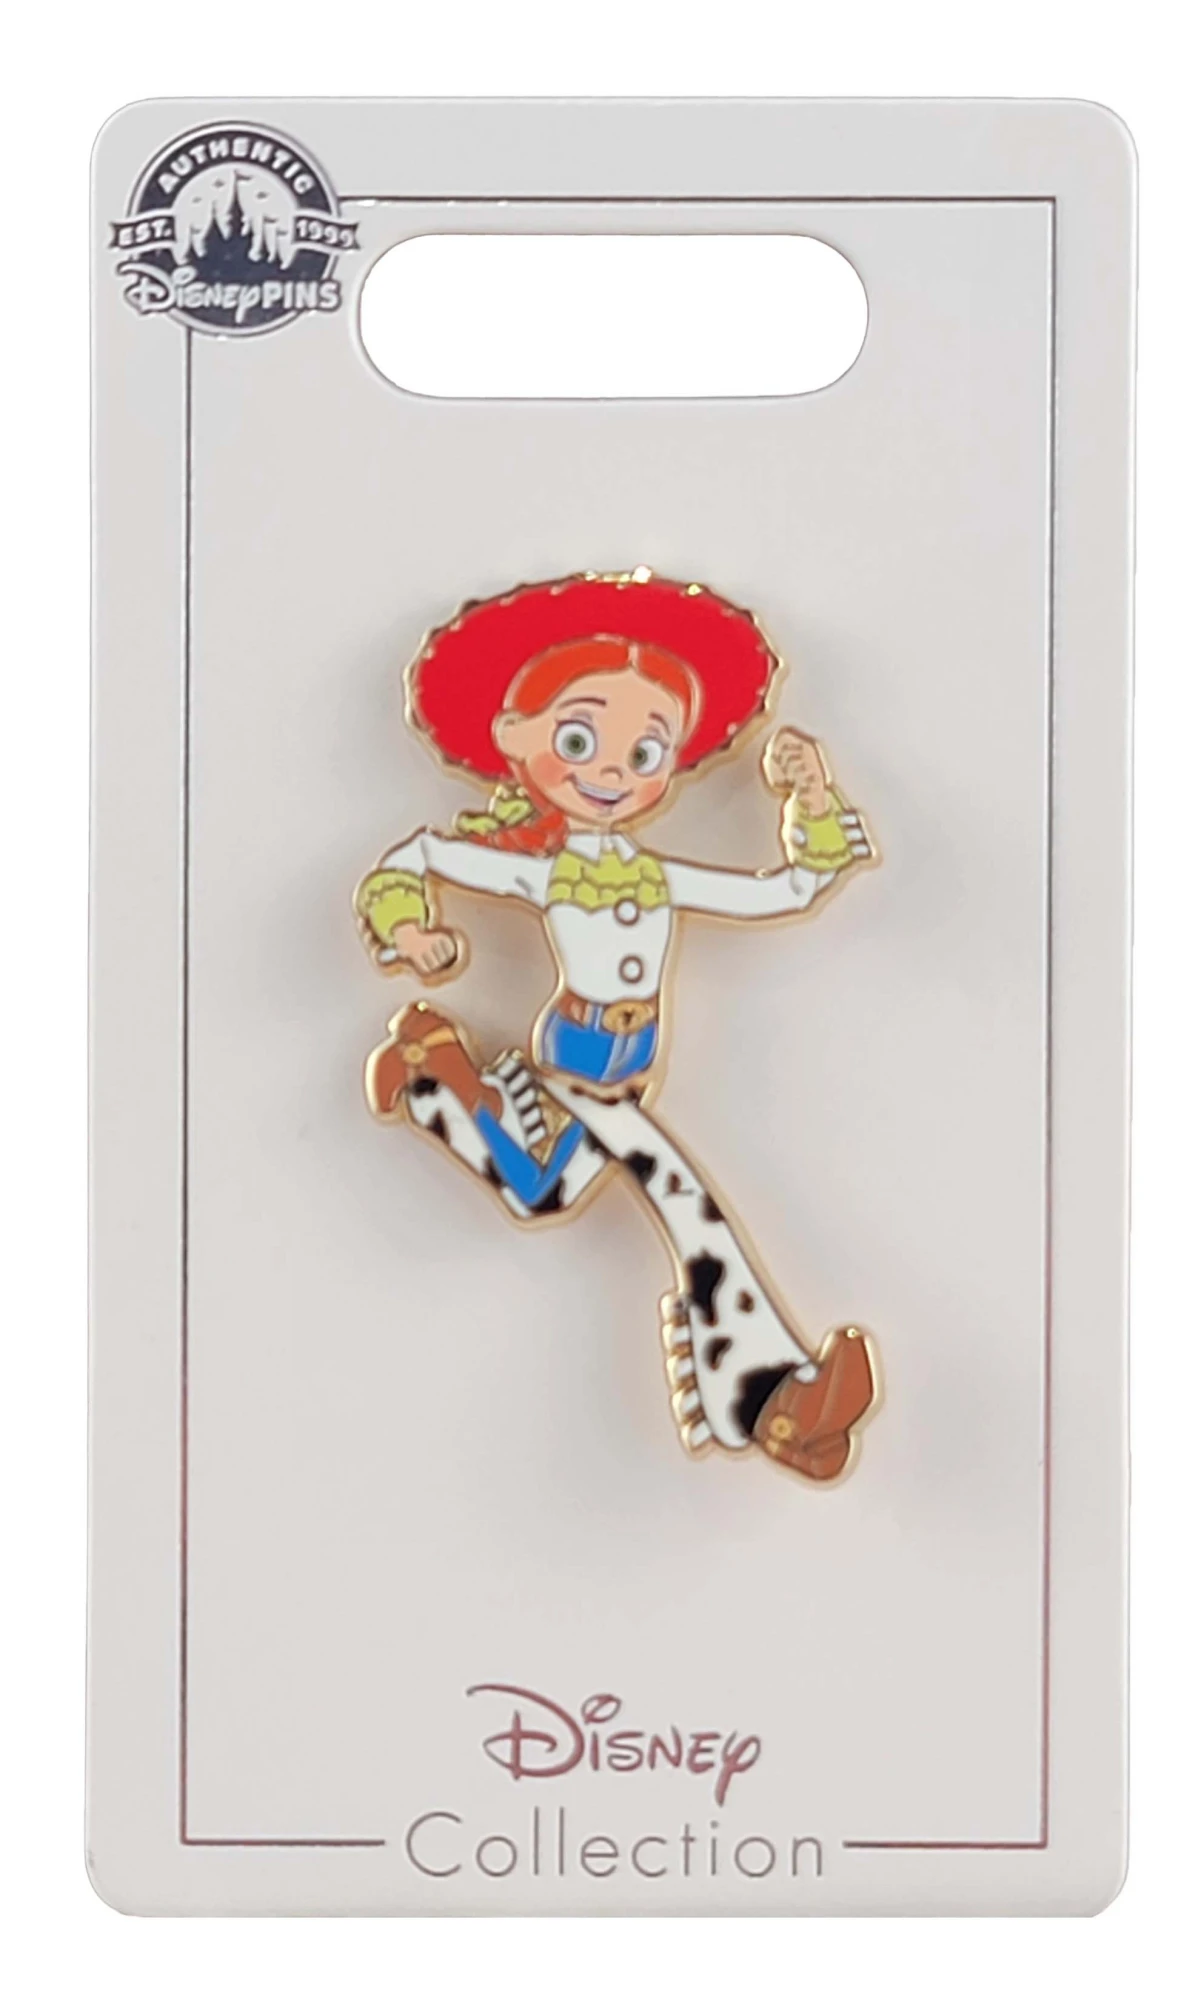 item Disney Pin - Toy Story Jessie - Movable Legs JessieLegs 1